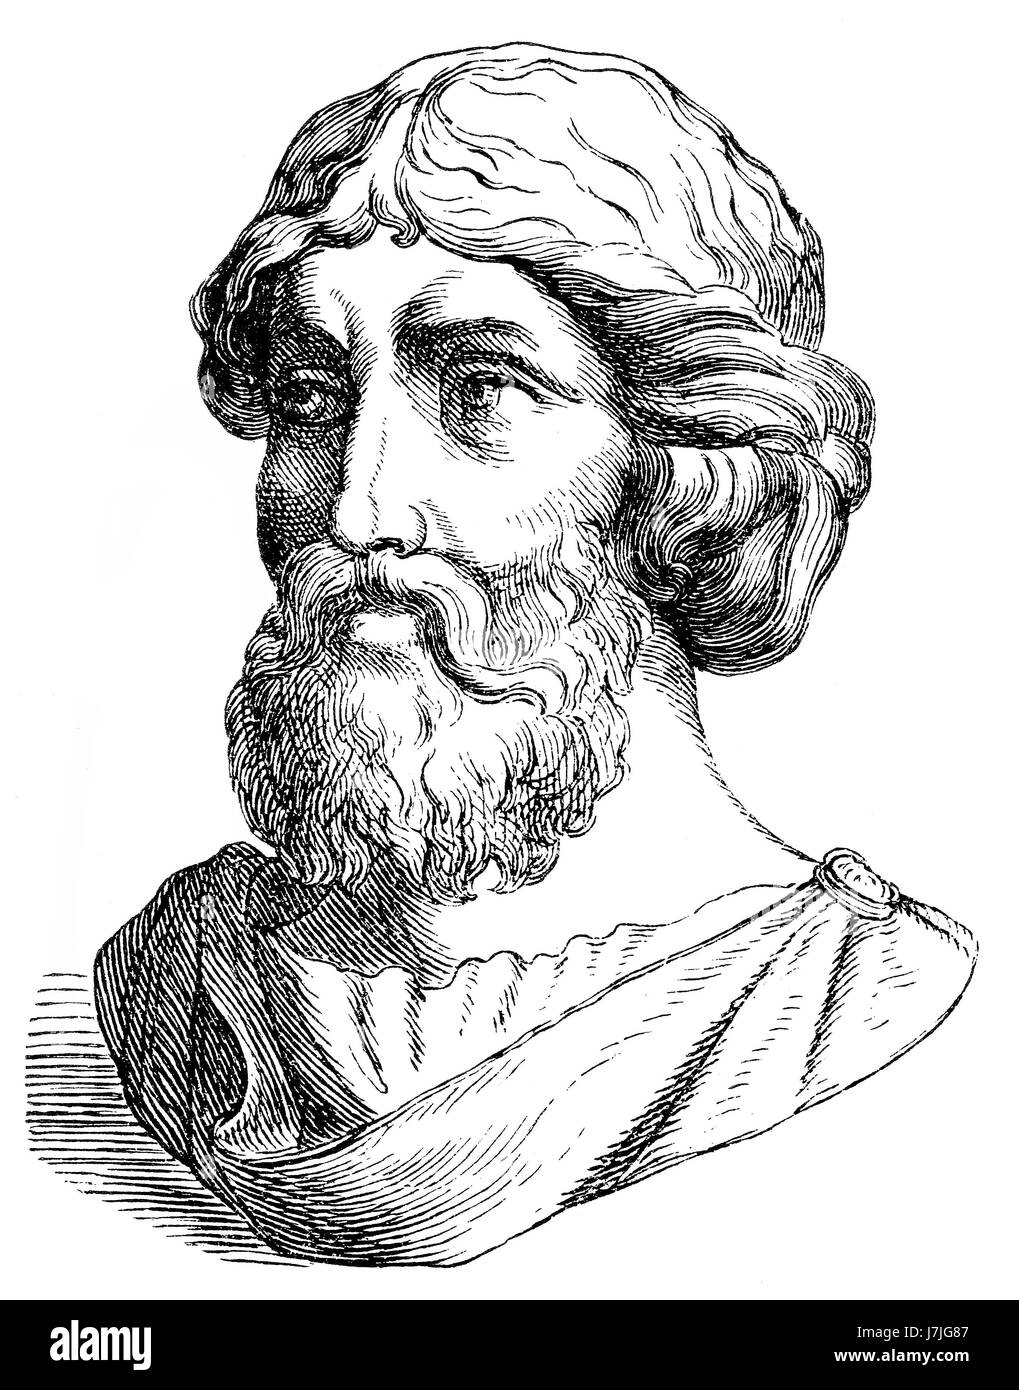 Pitágoras de Samos, filósofo, matemático griego jónico Foto de stock